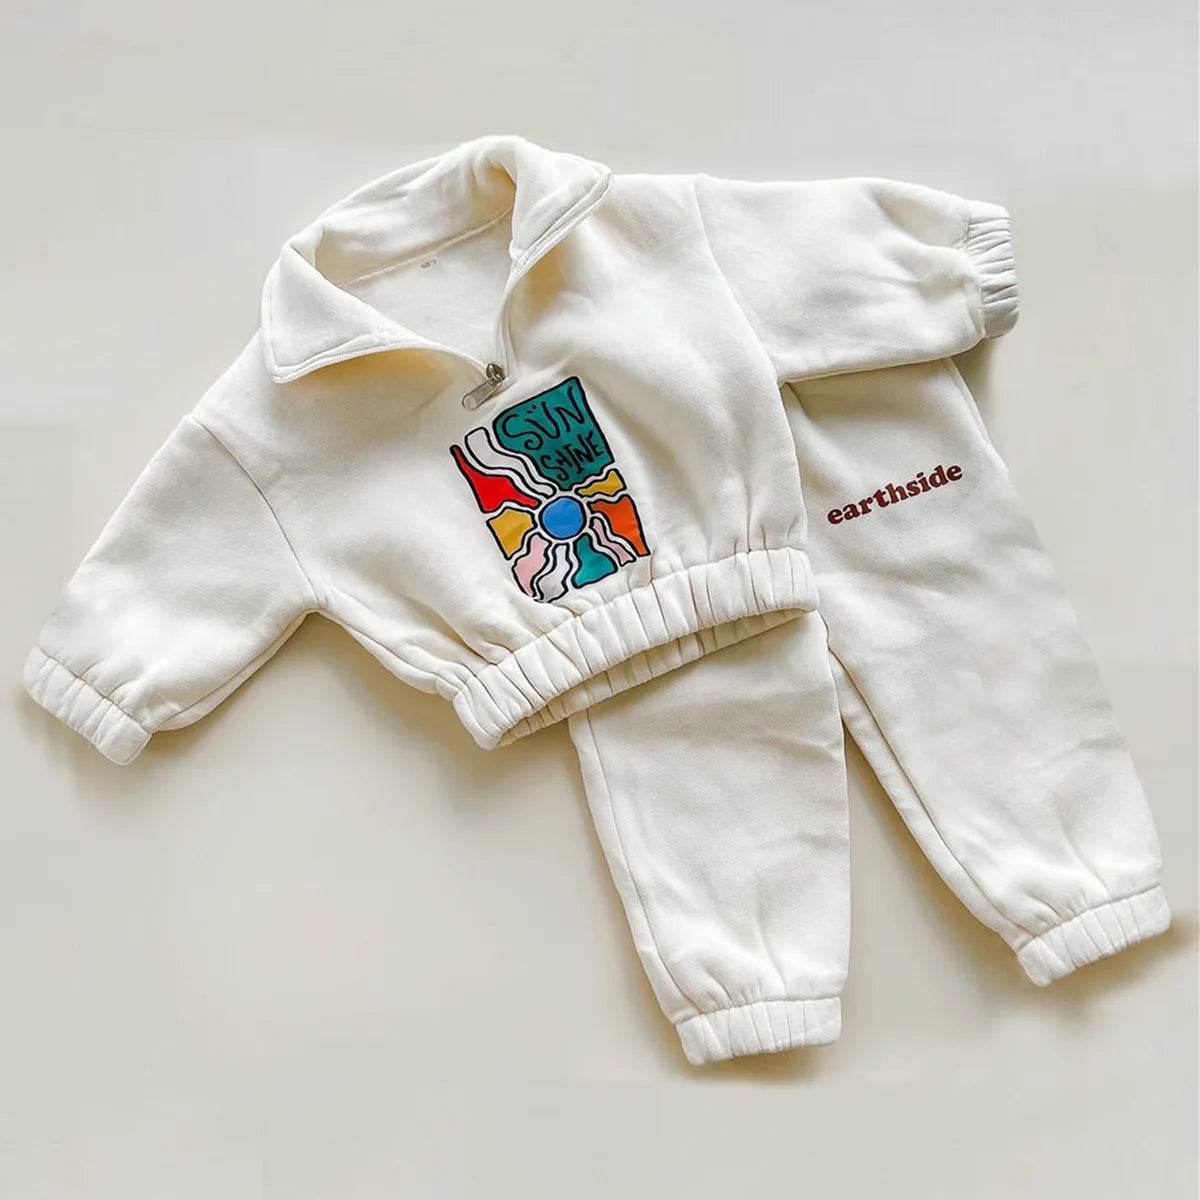 Toddler Clothing Set: top + Pants